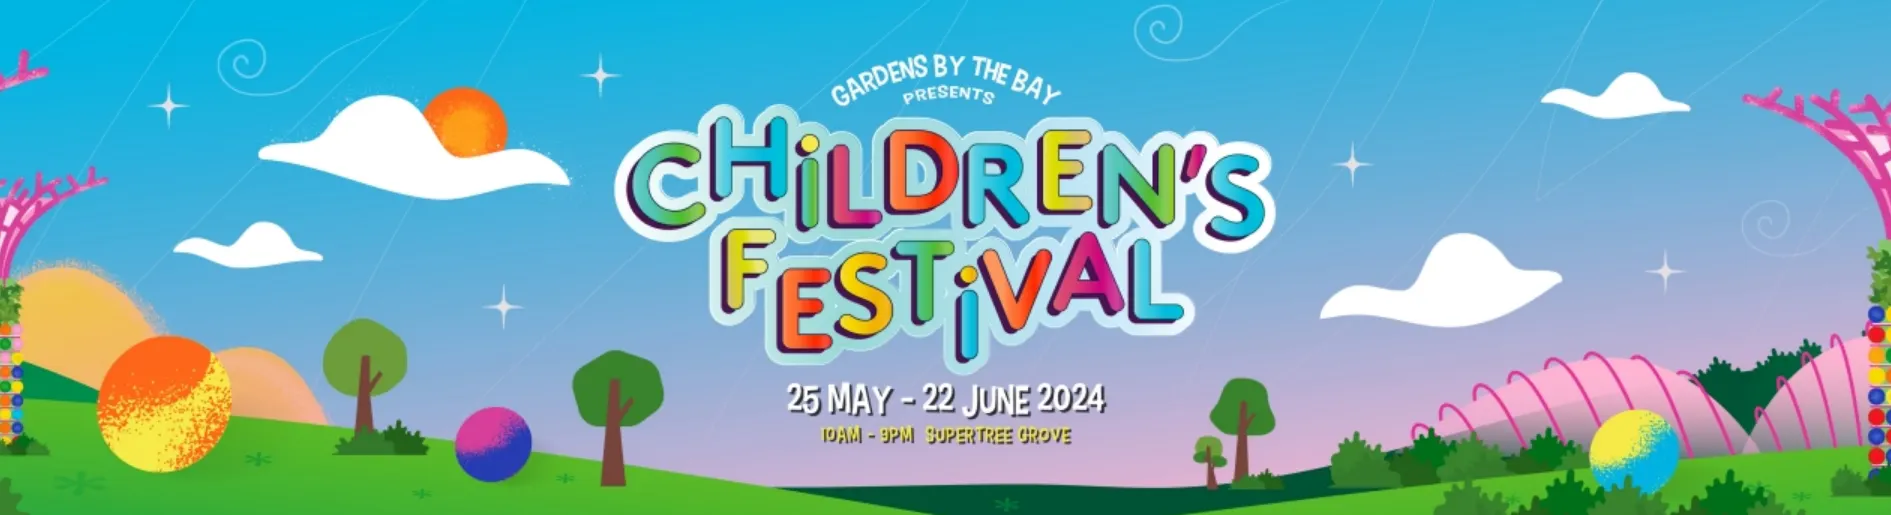 Trip.com Promo Code Singapore: Children's Festival